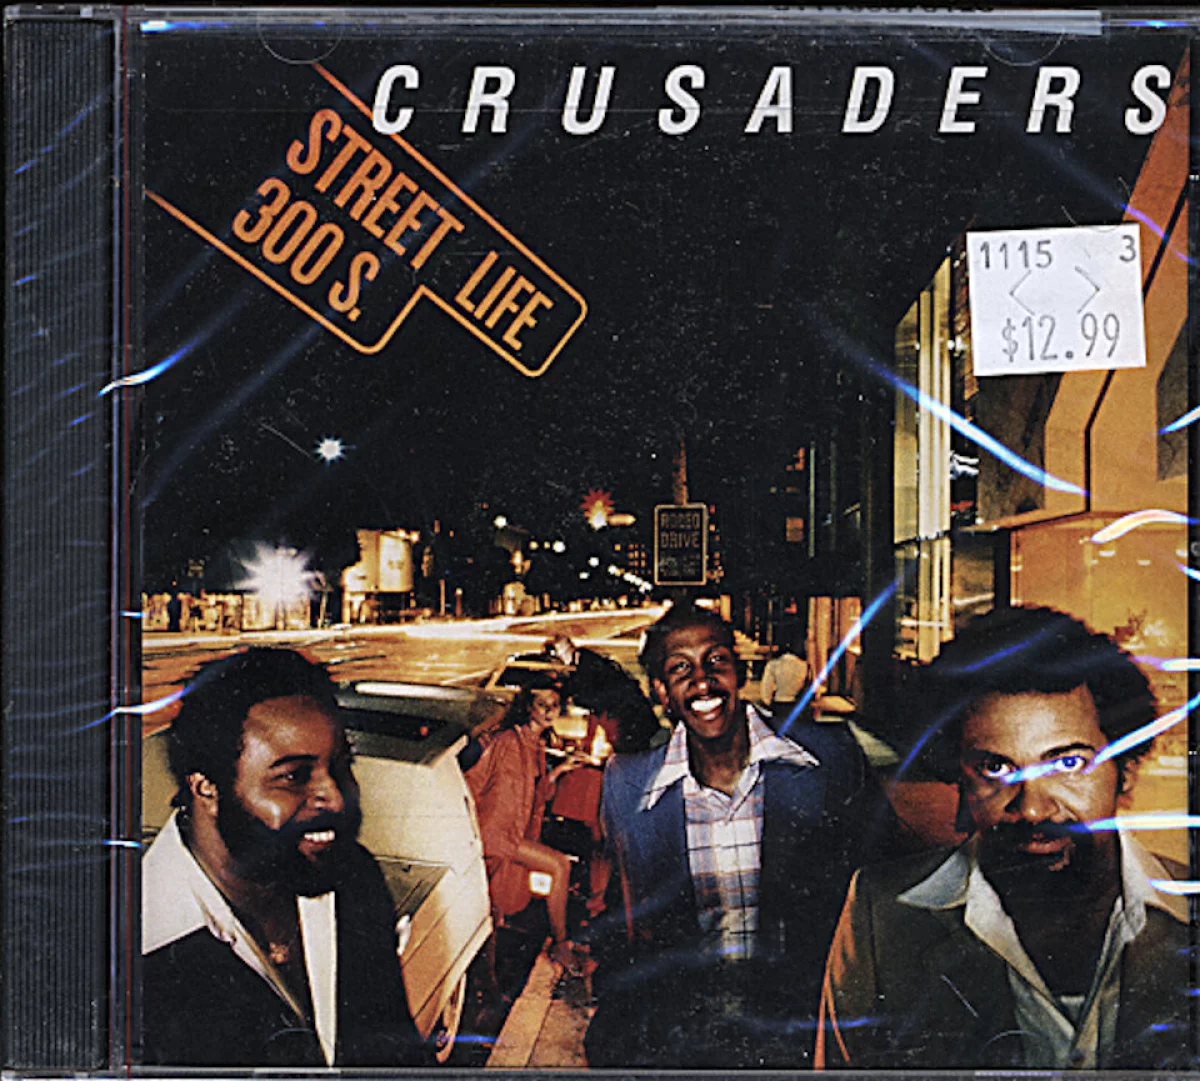 The Crusaders CD, 1996 at Wolfgang's